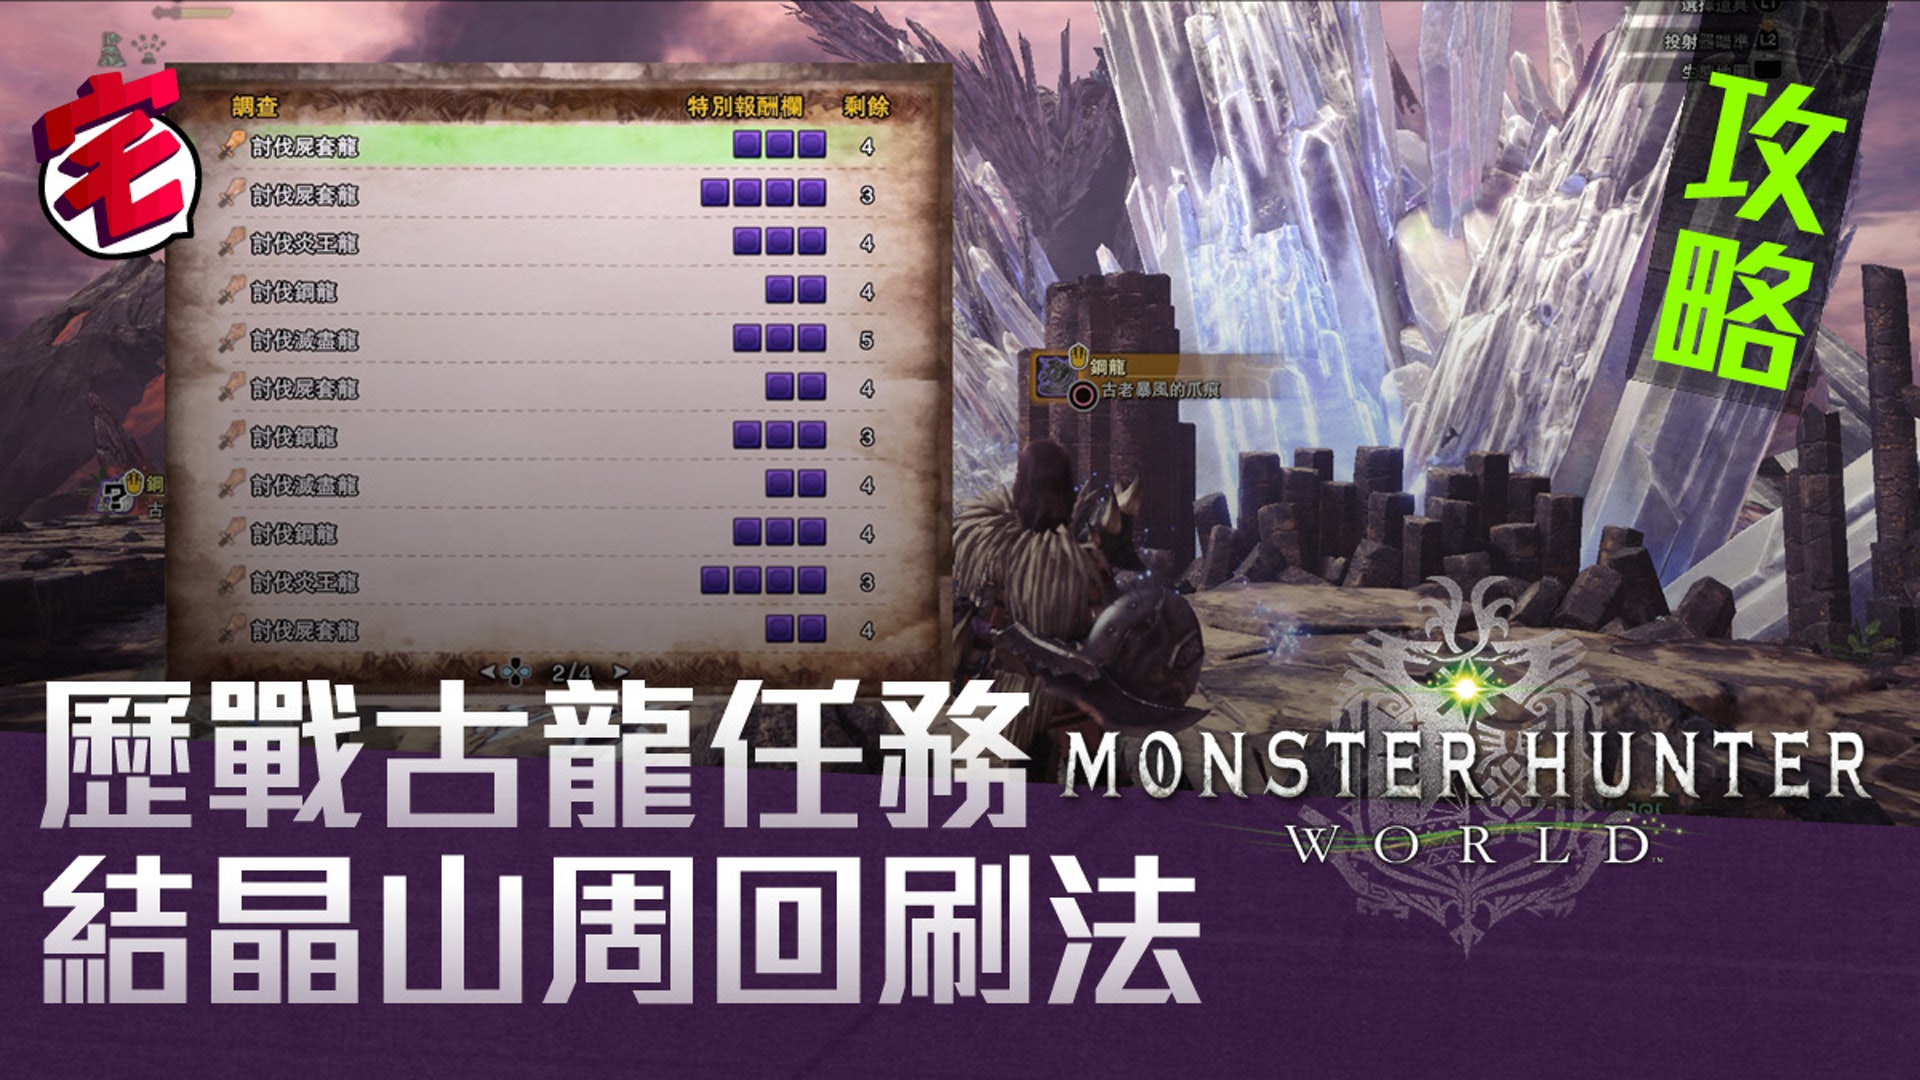 Monster Hunter World 攻略 速刷歷戰古龍痕跡 結晶山周回法 香港01 遊戲動漫